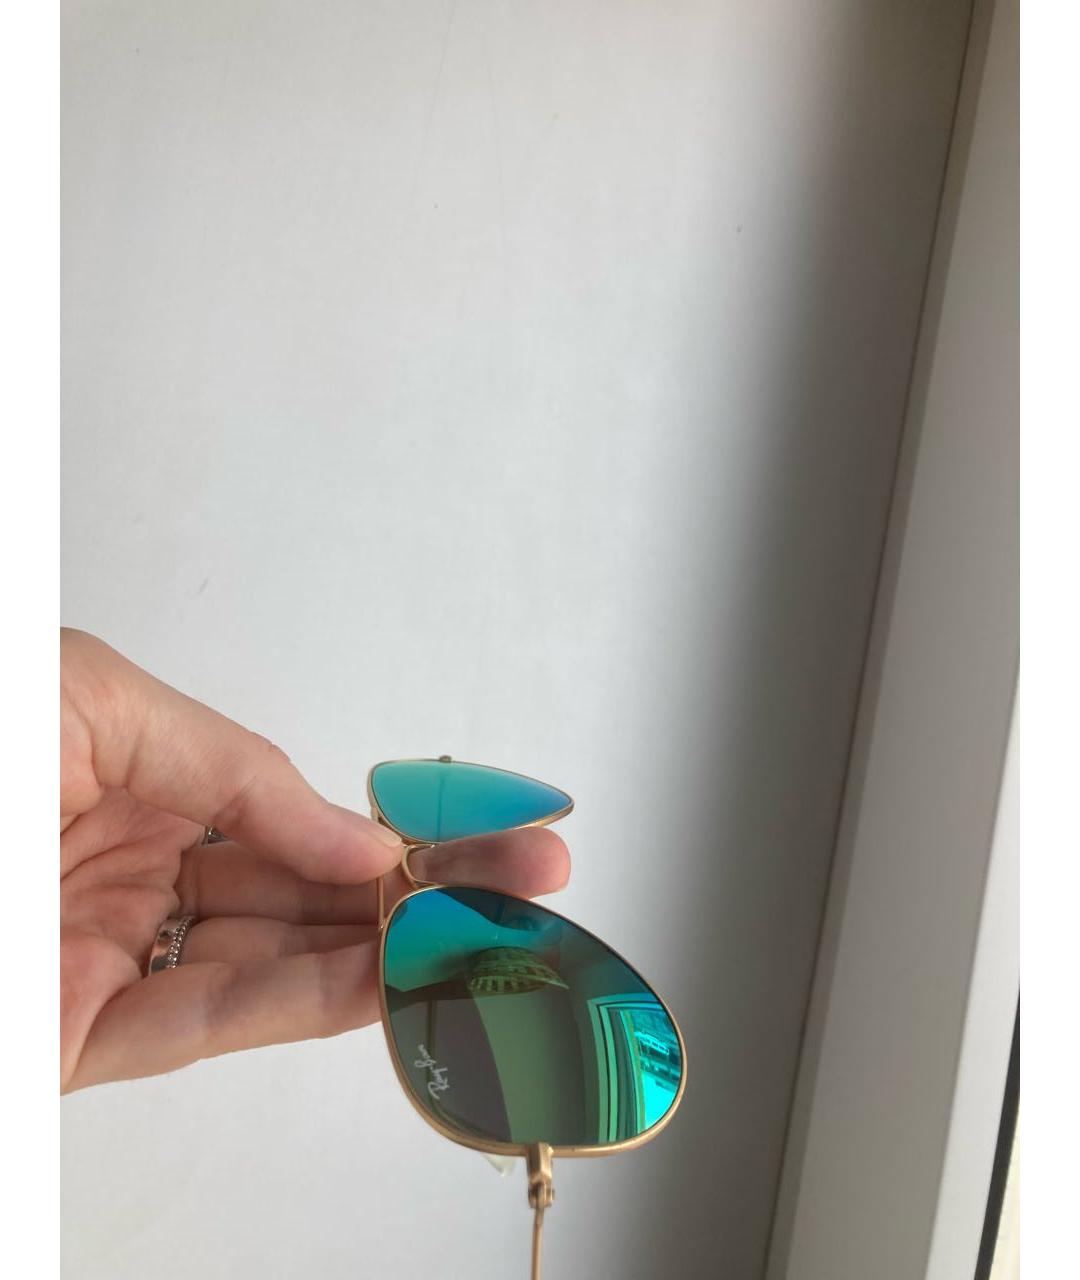 RAY BAN Зеленые металлические солнцезащитные очки, фото 5